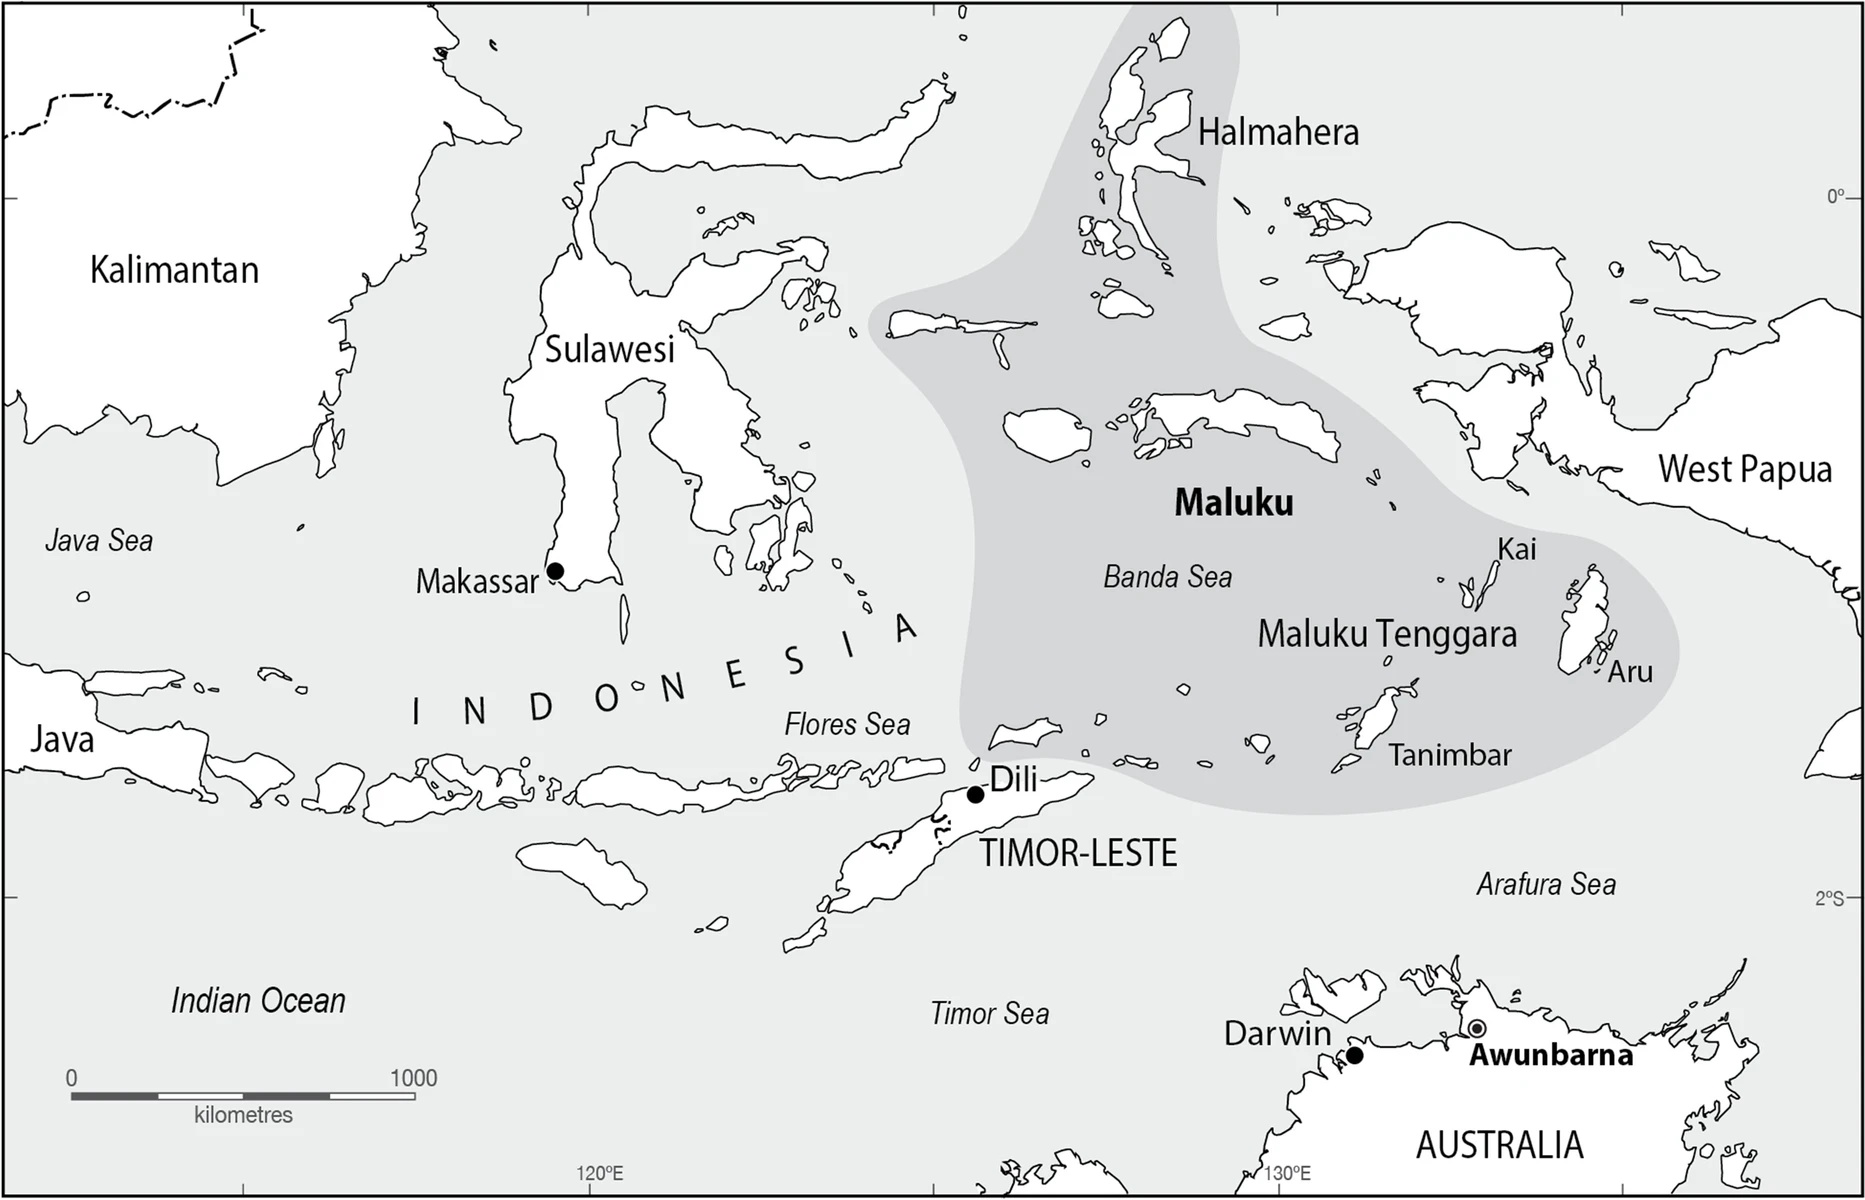 ઇન્ડોનેશિયાની મોલુક્કન બોટ ઓસ્ટ્રેલિયન રોક આર્ટ 2 માં ઓળખાય છે